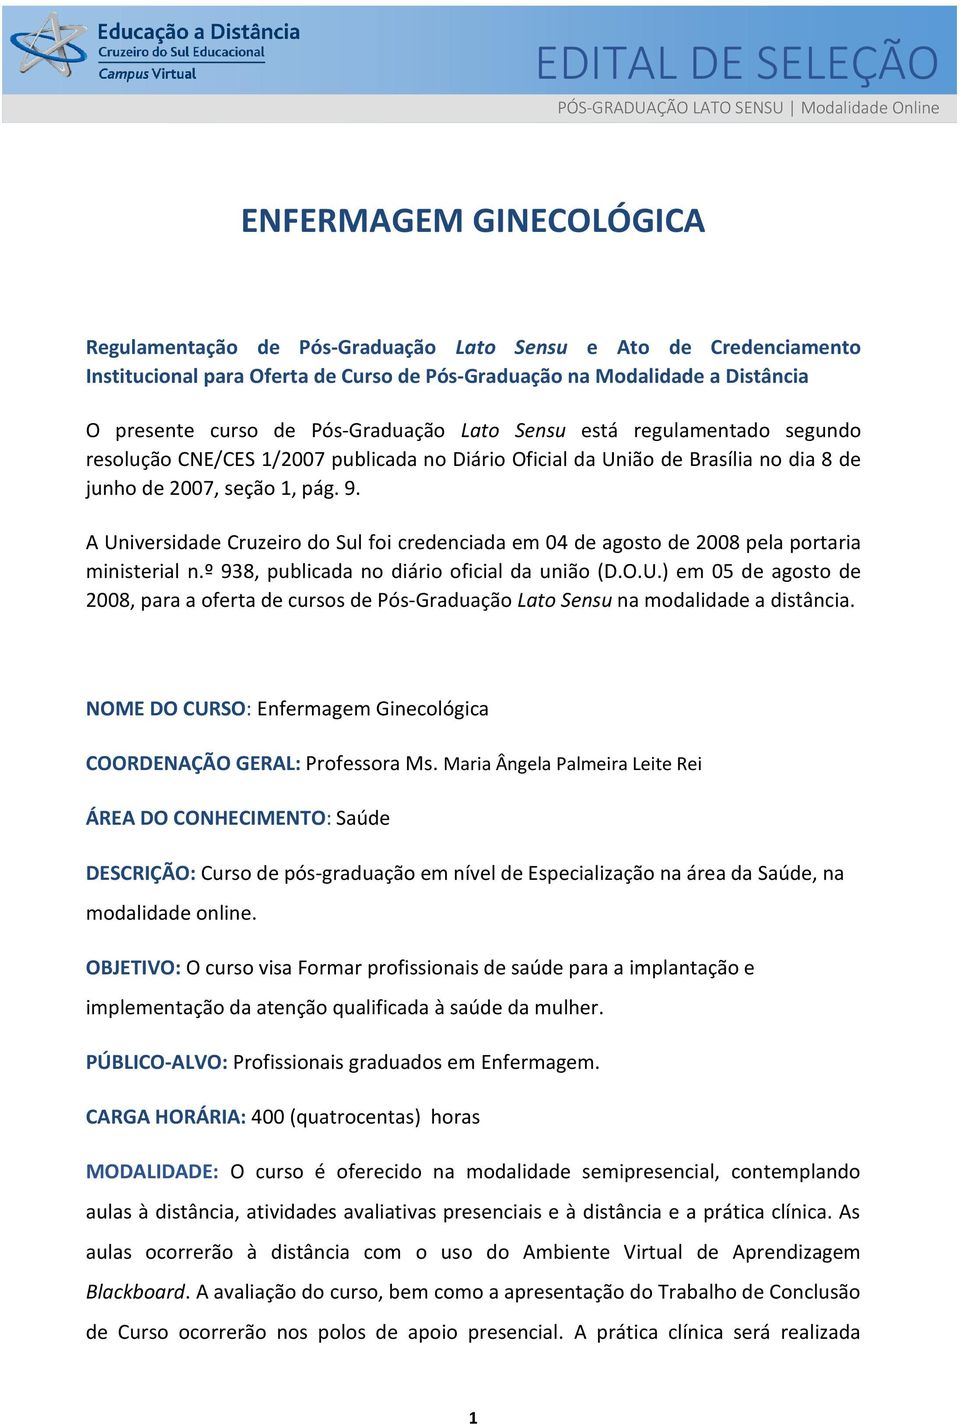 junho de 2007, seção 1, pág. 9. A Universidade Cruzeiro do Sul foi credenciada em 04 de agosto de 2008 pela portaria ministerial n.º 938, publicada no diário oficial da união (D.O.U.) em 05 de agosto de 2008, para a oferta de cursos de Pós-Graduação Lato Sensu na modalidade a distância.